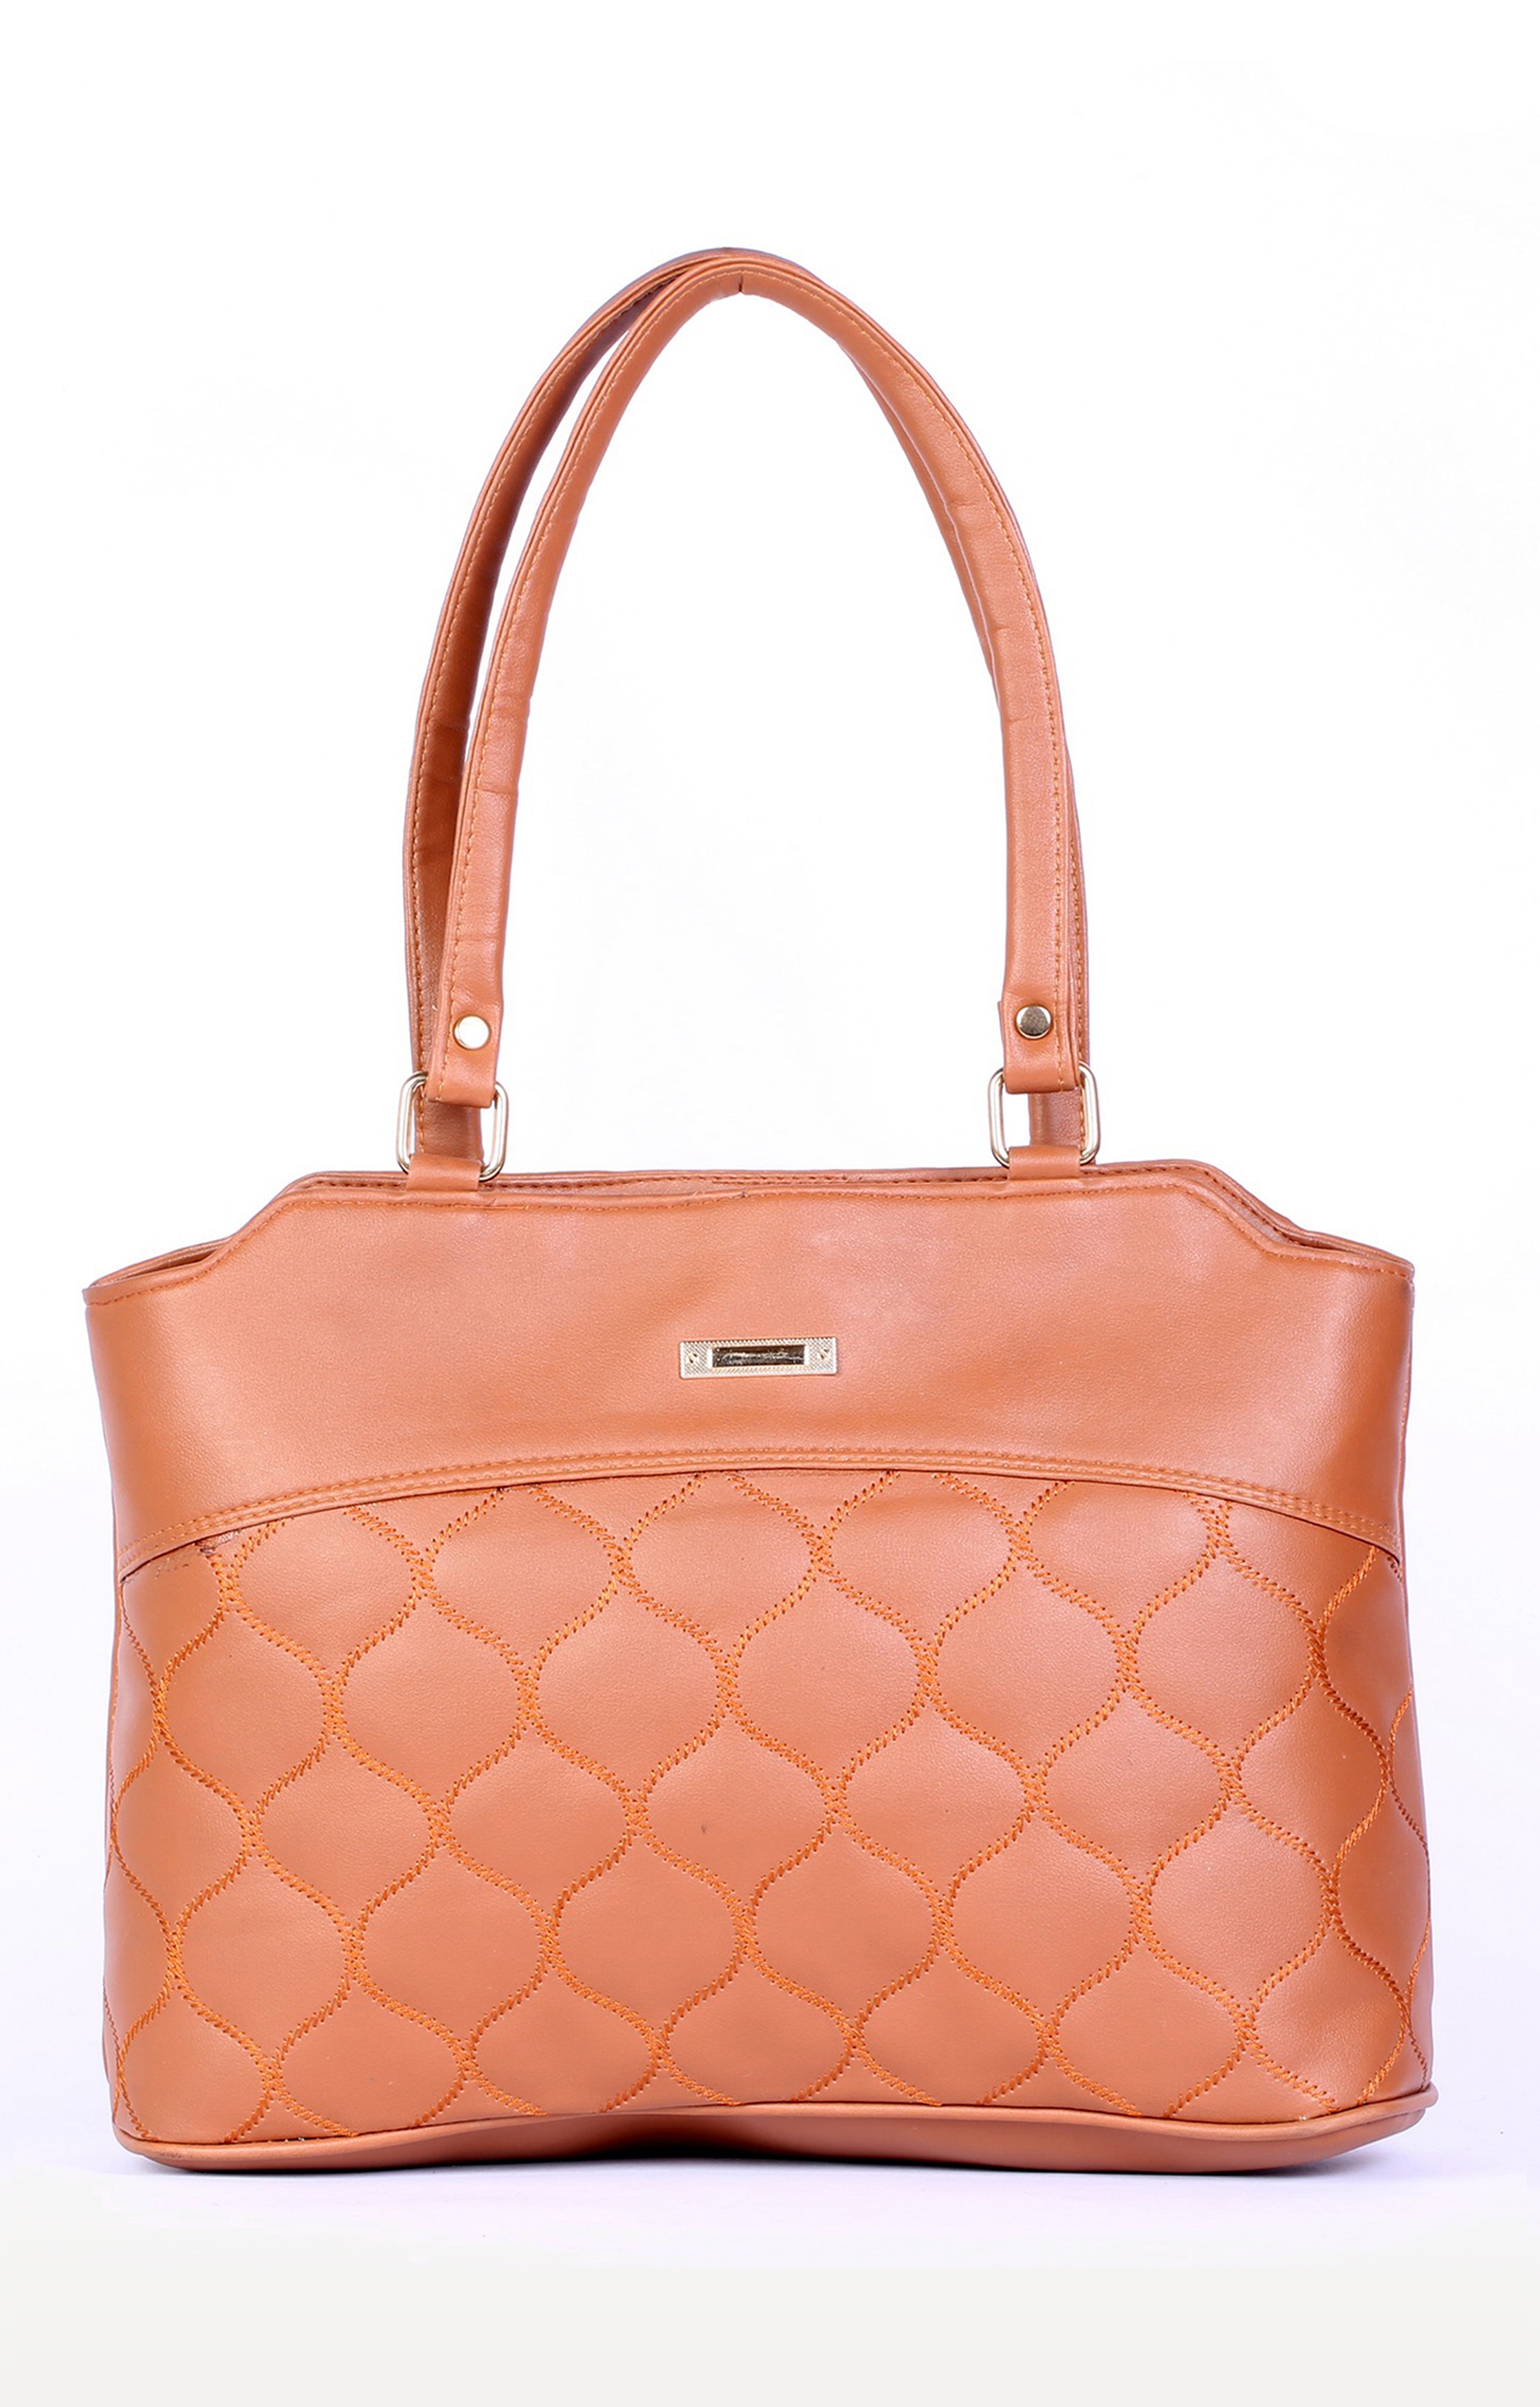 Lely's Designer Brown Handbag For Women/Girls